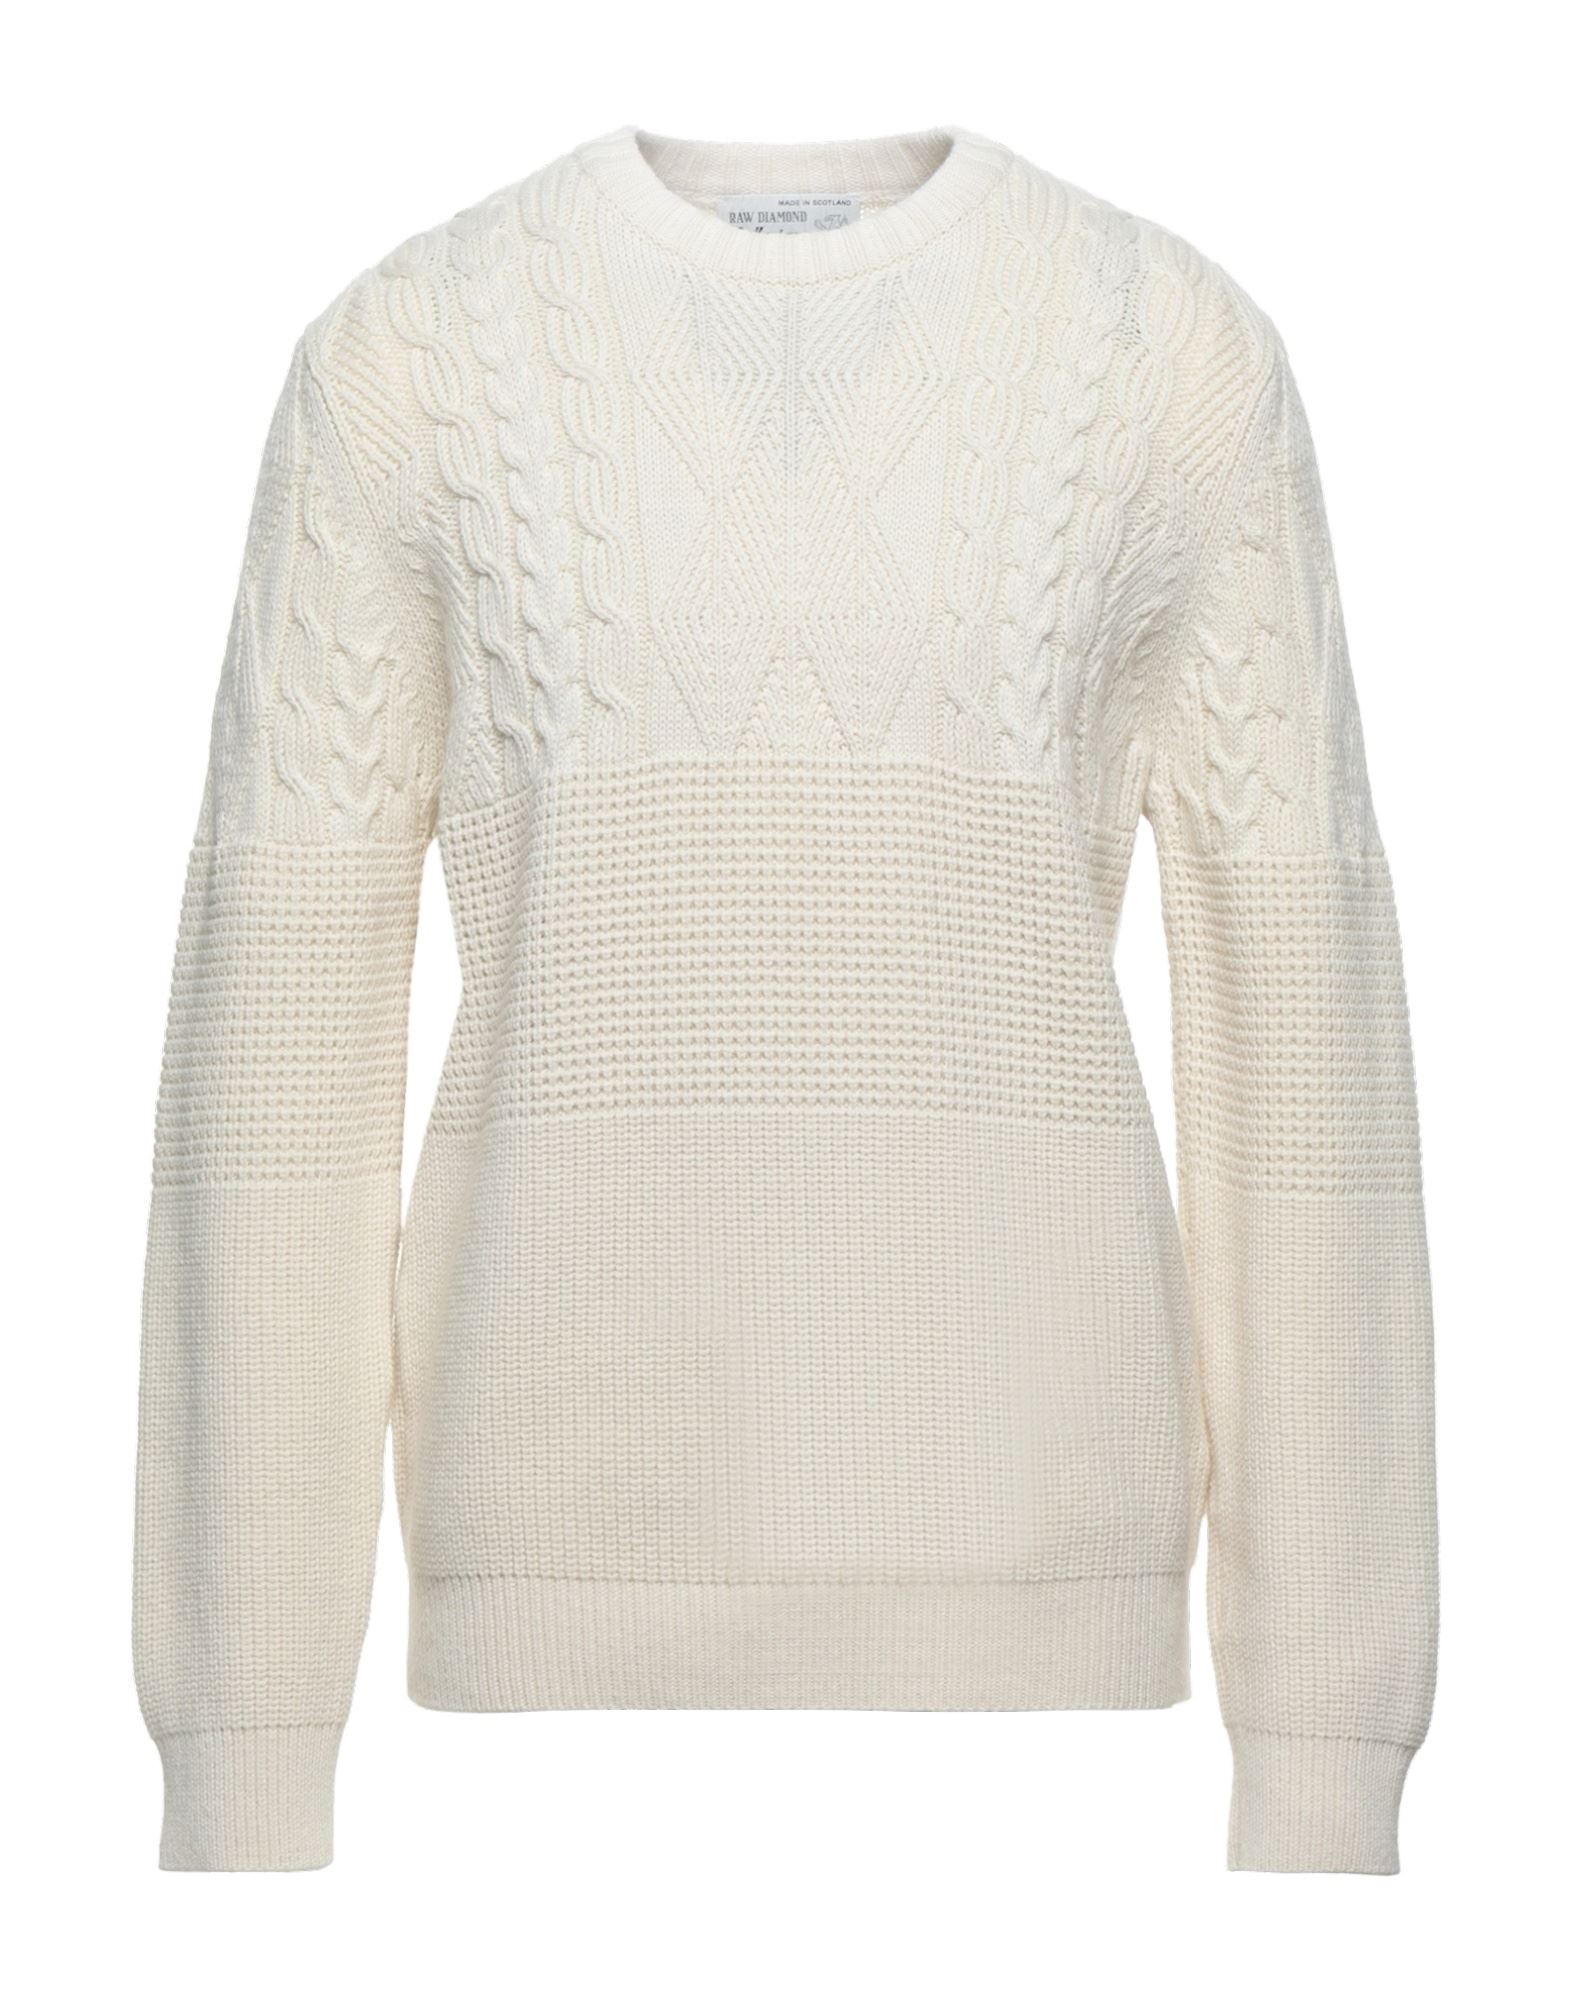 Ballantyne Sweaters In Ivory